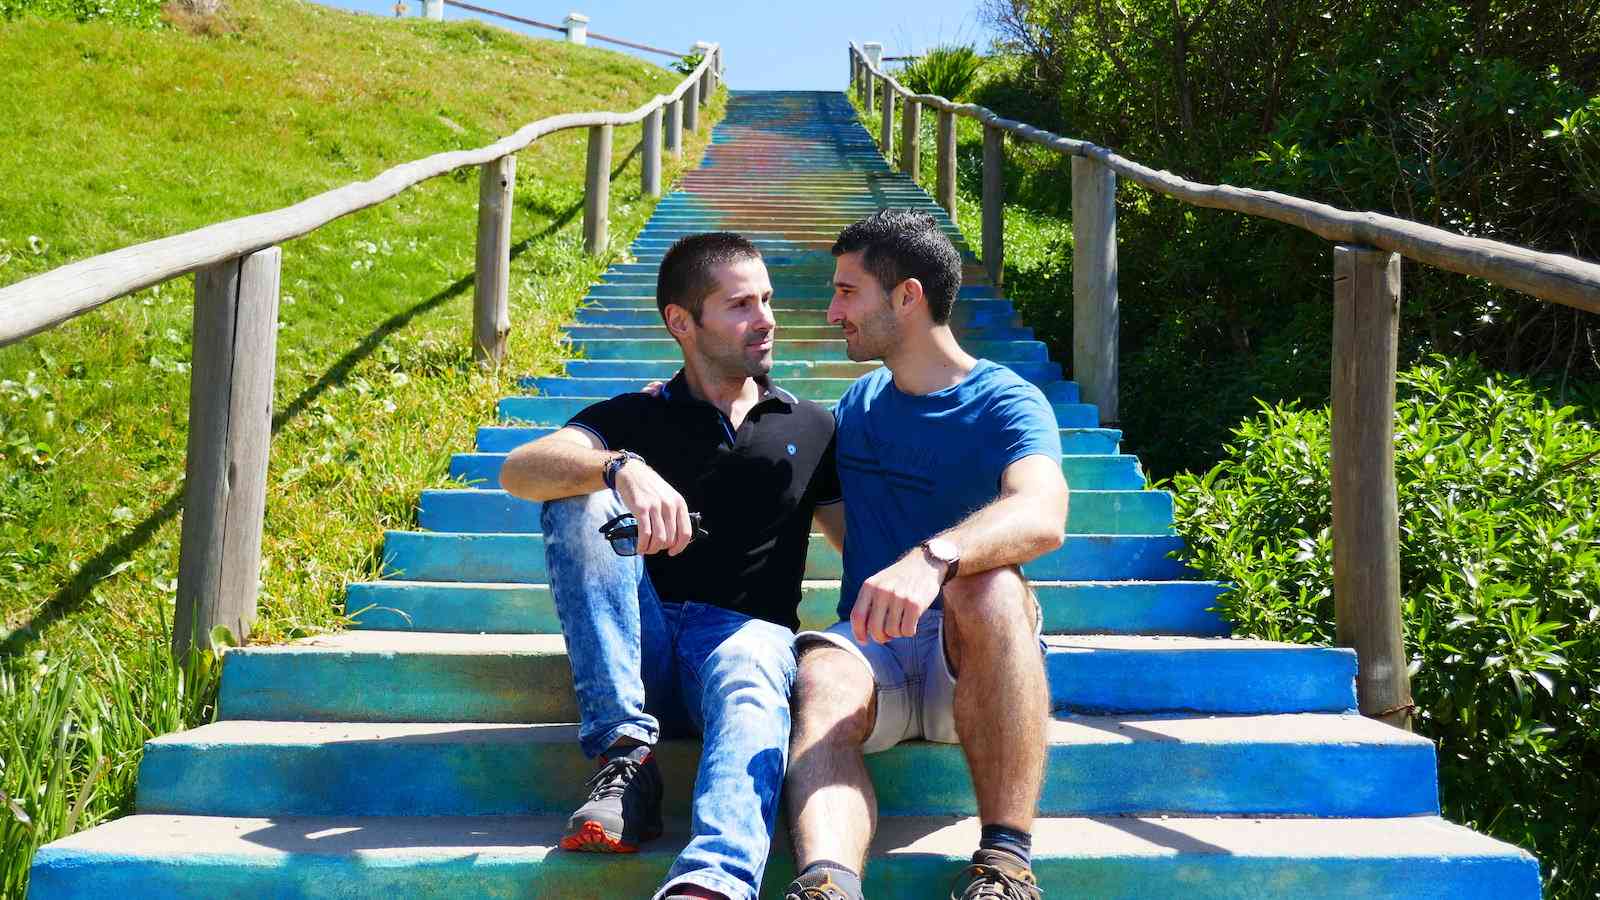 O Uruguai tem alguns dos melhores direitos LGBTQ do mundo e é um país muito tolerante em muitos aspectos